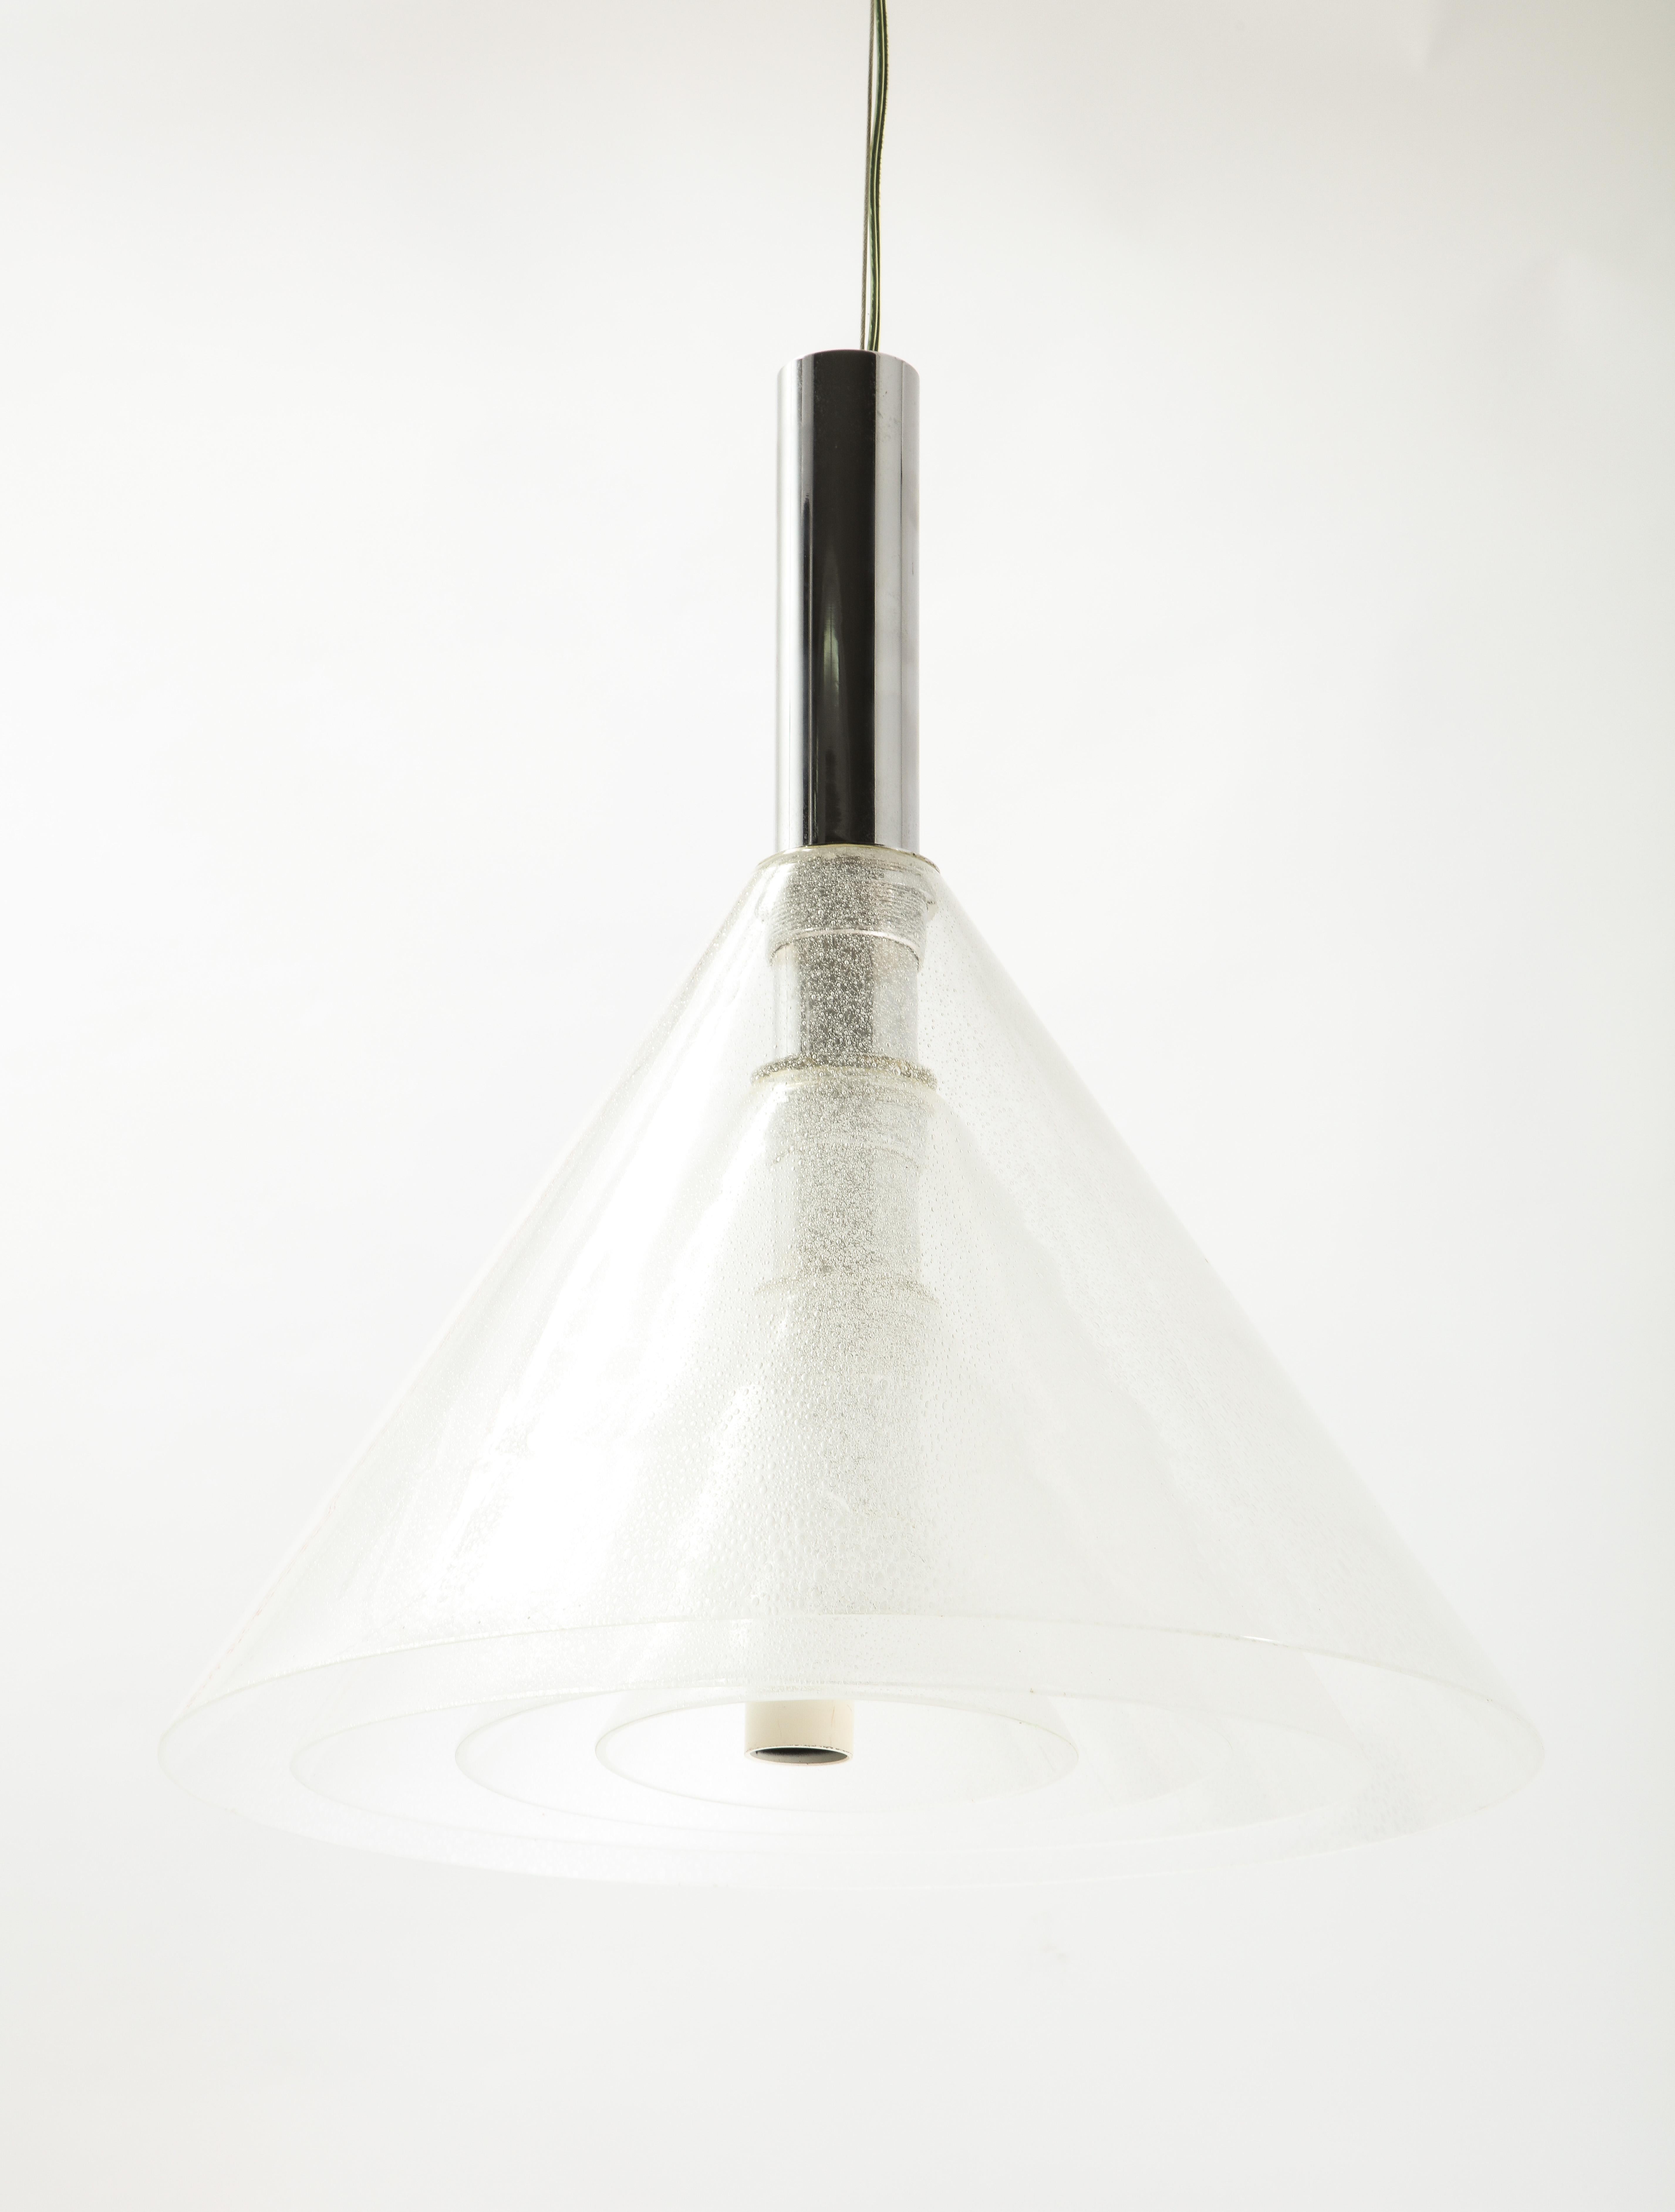 Art Glass Alberto Nason Murano Glass Layered Concentric Cone Pendant, Italy 1970's For Sale